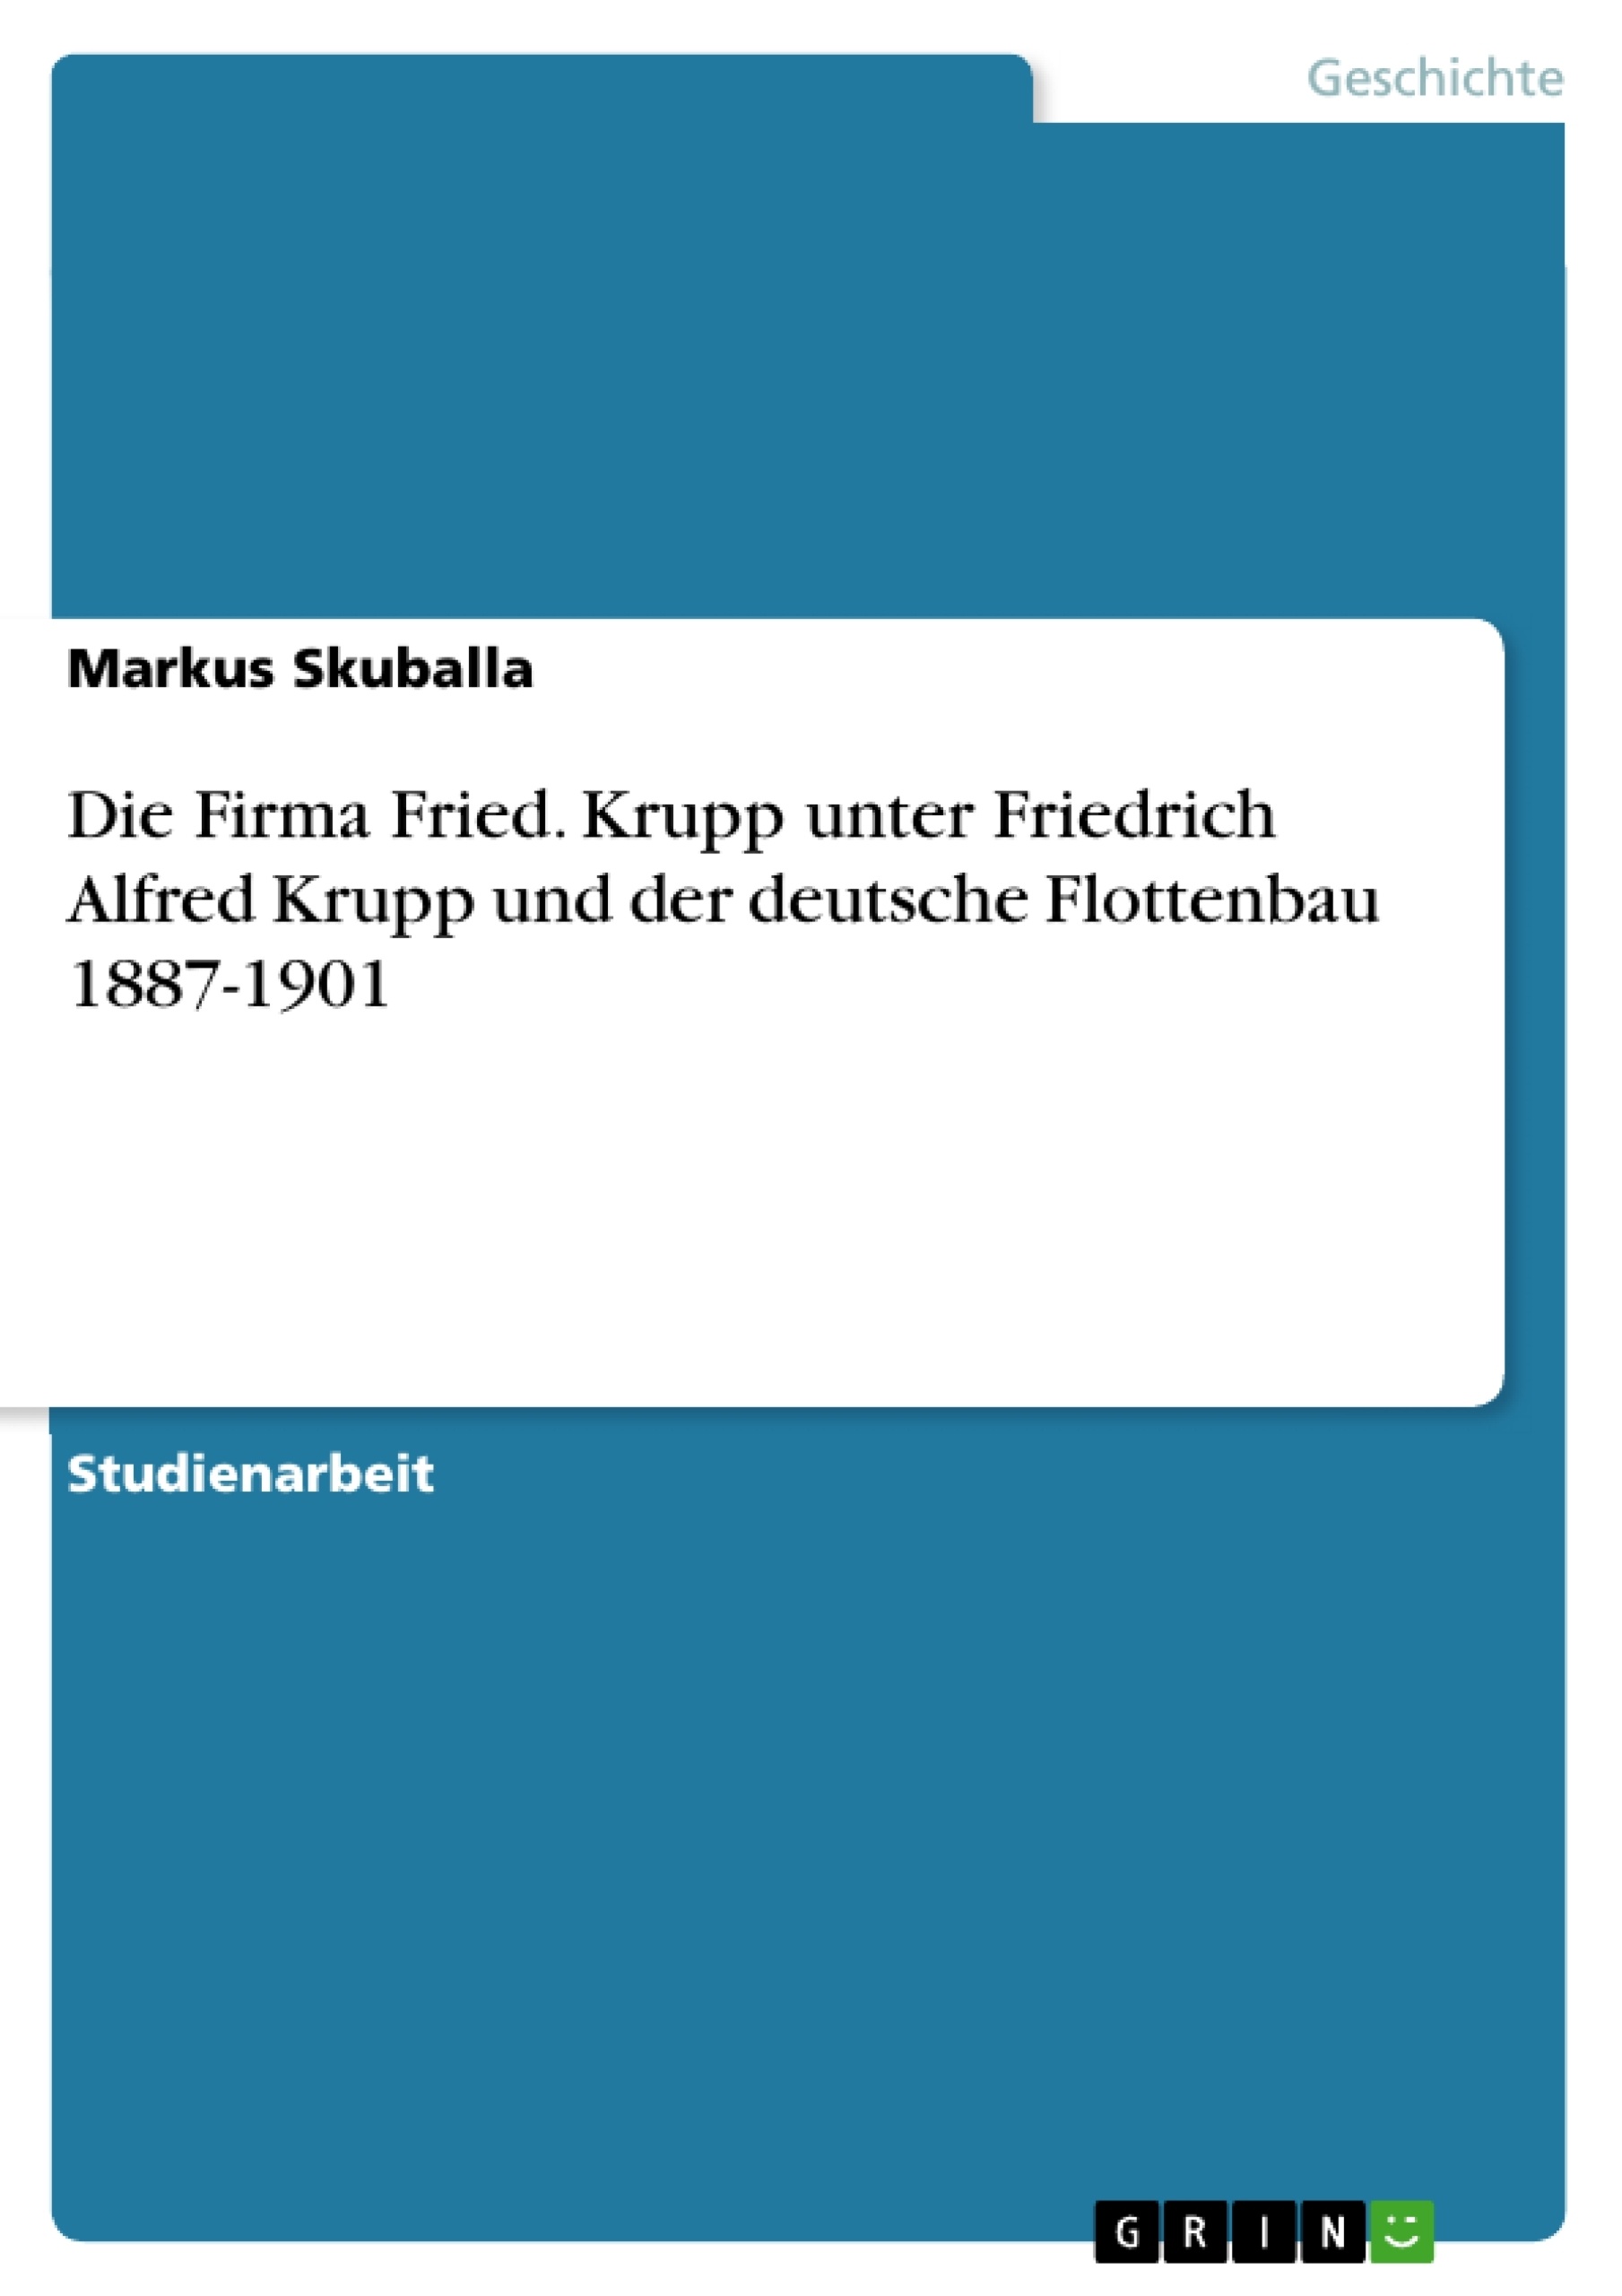 Título: Die Firma Fried. Krupp unter Friedrich Alfred Krupp und der deutsche Flottenbau 1887-1901